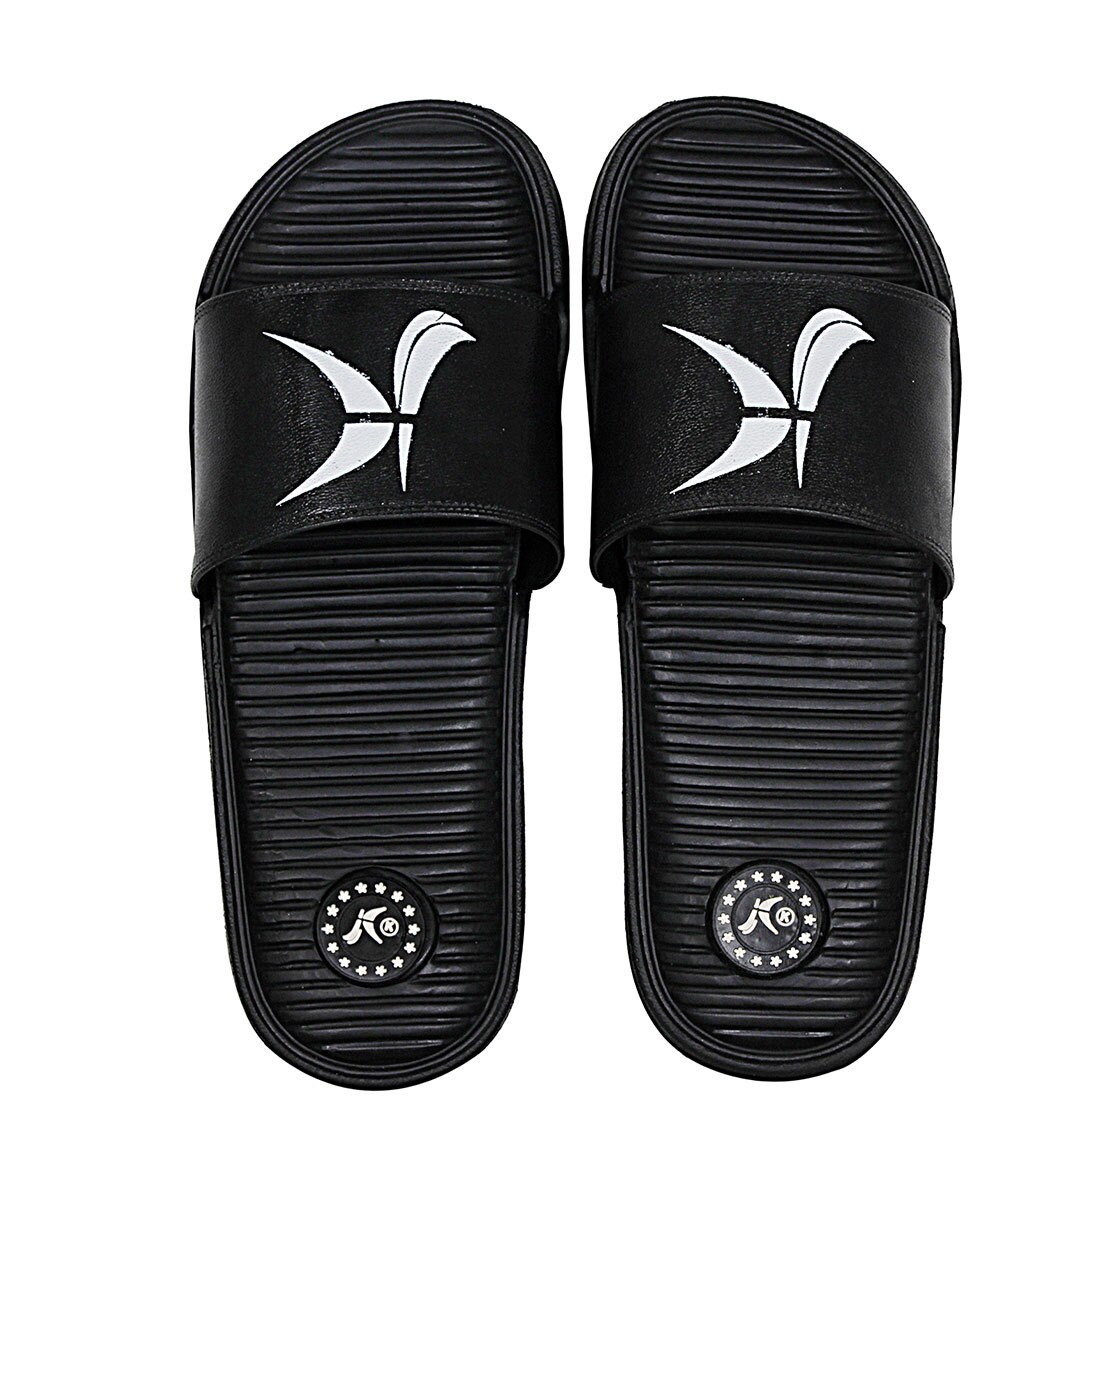 kraasa men's outdoor sandals